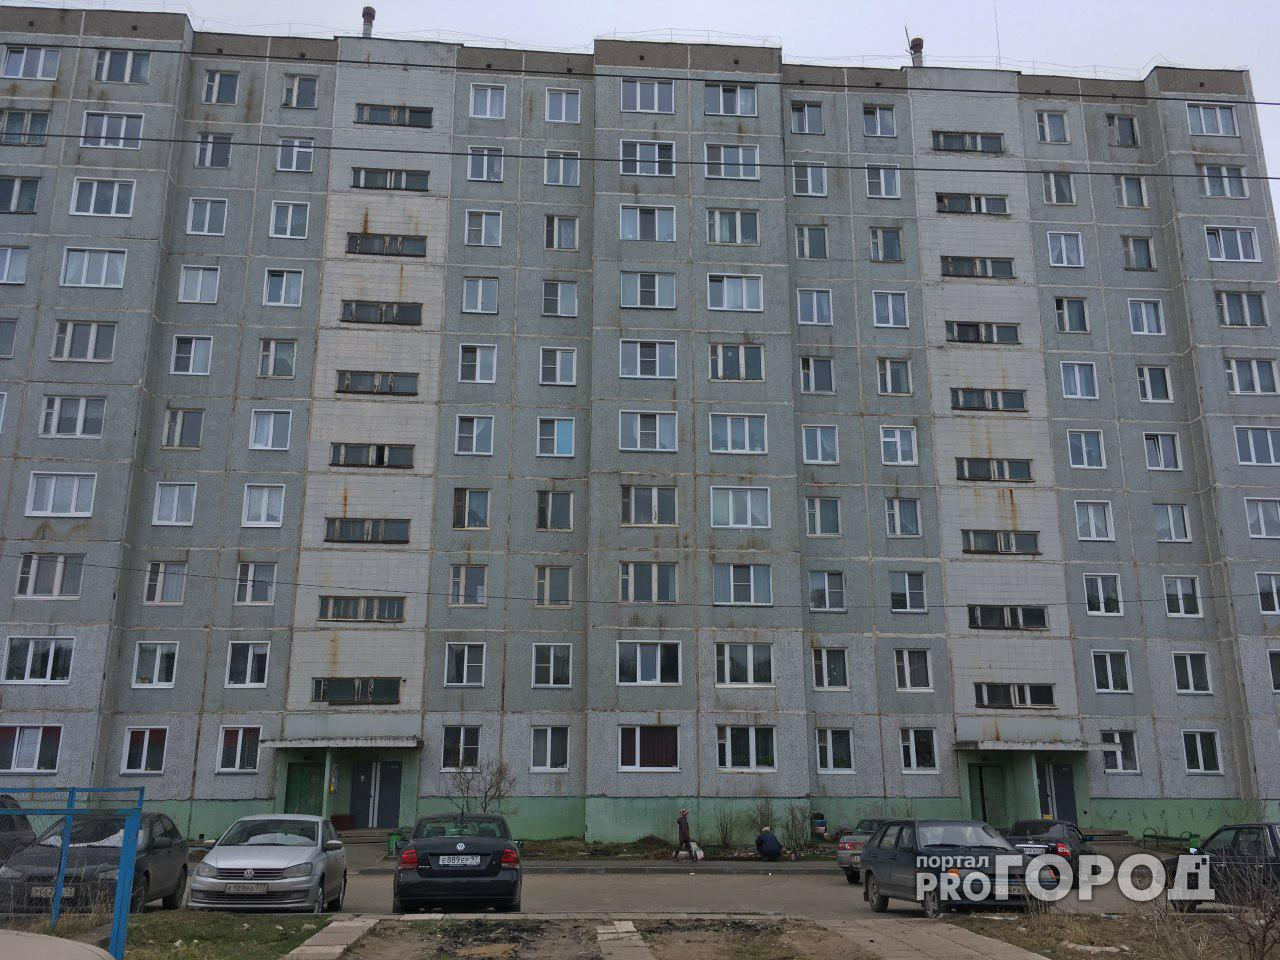 В Кирове умерла одна из девочек, выпавших из окна 9 этажа